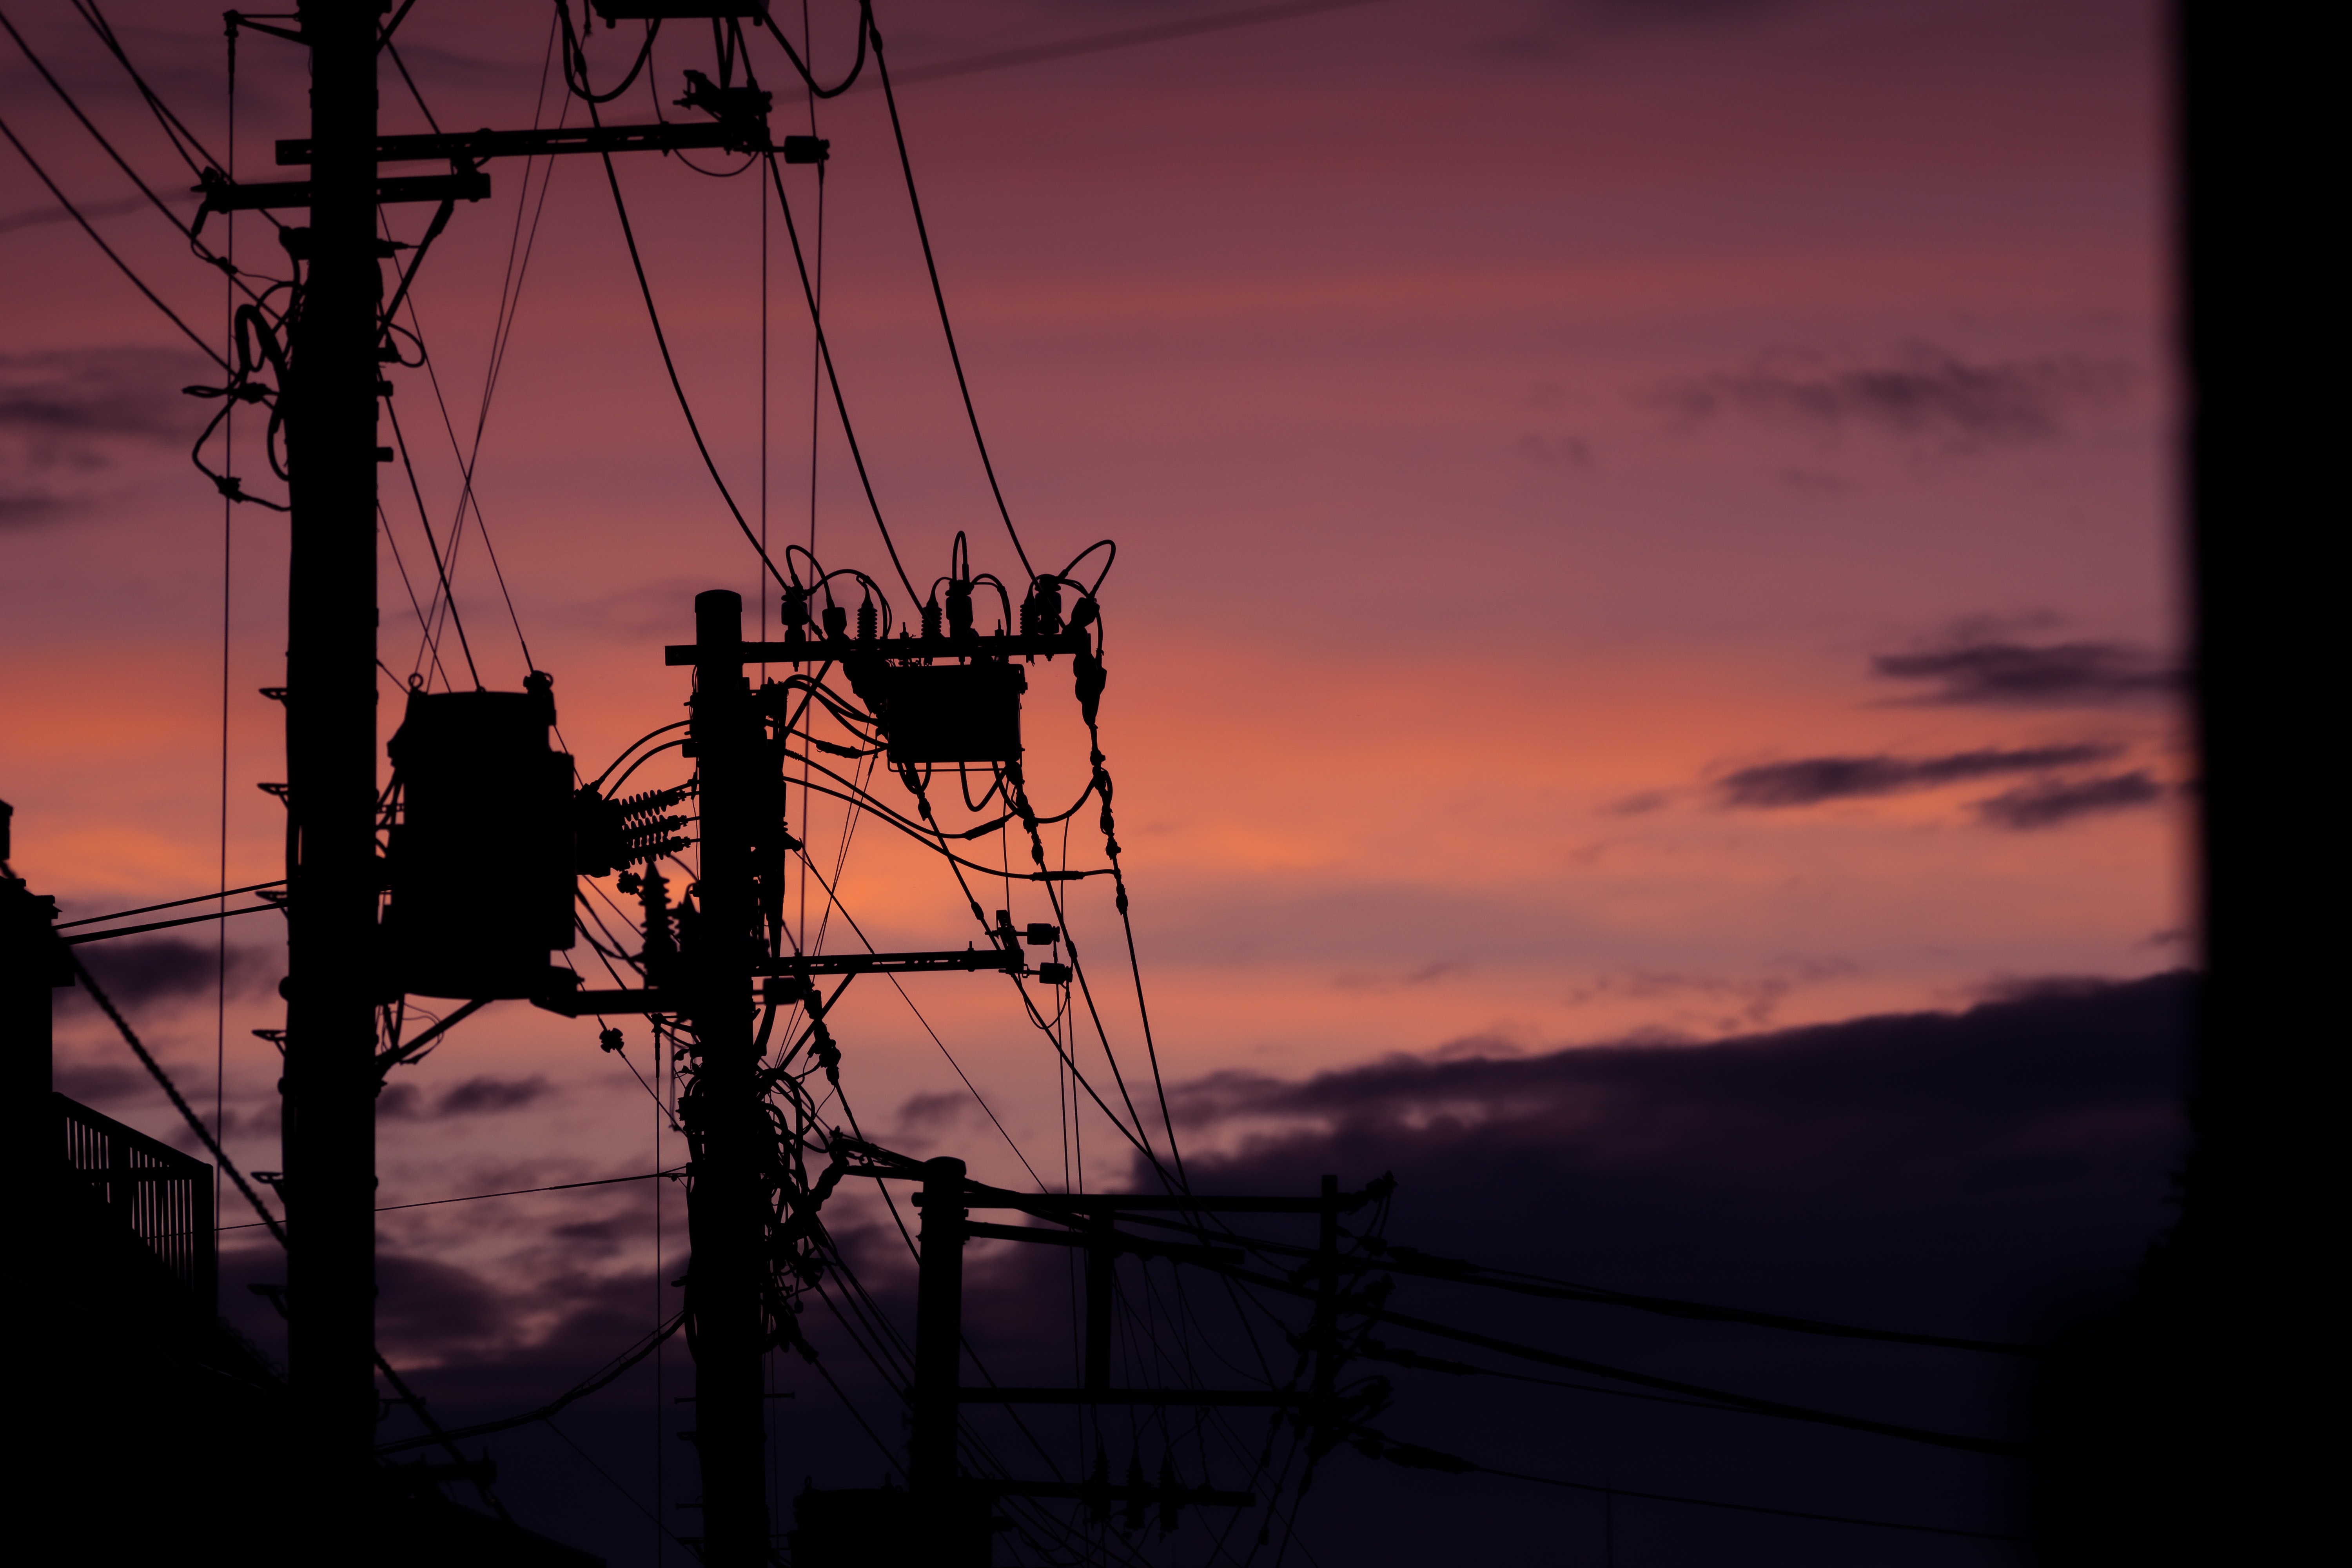 Notfallvorsorge Blackout – Abendliche Szene mit schemenhaften Strommasten